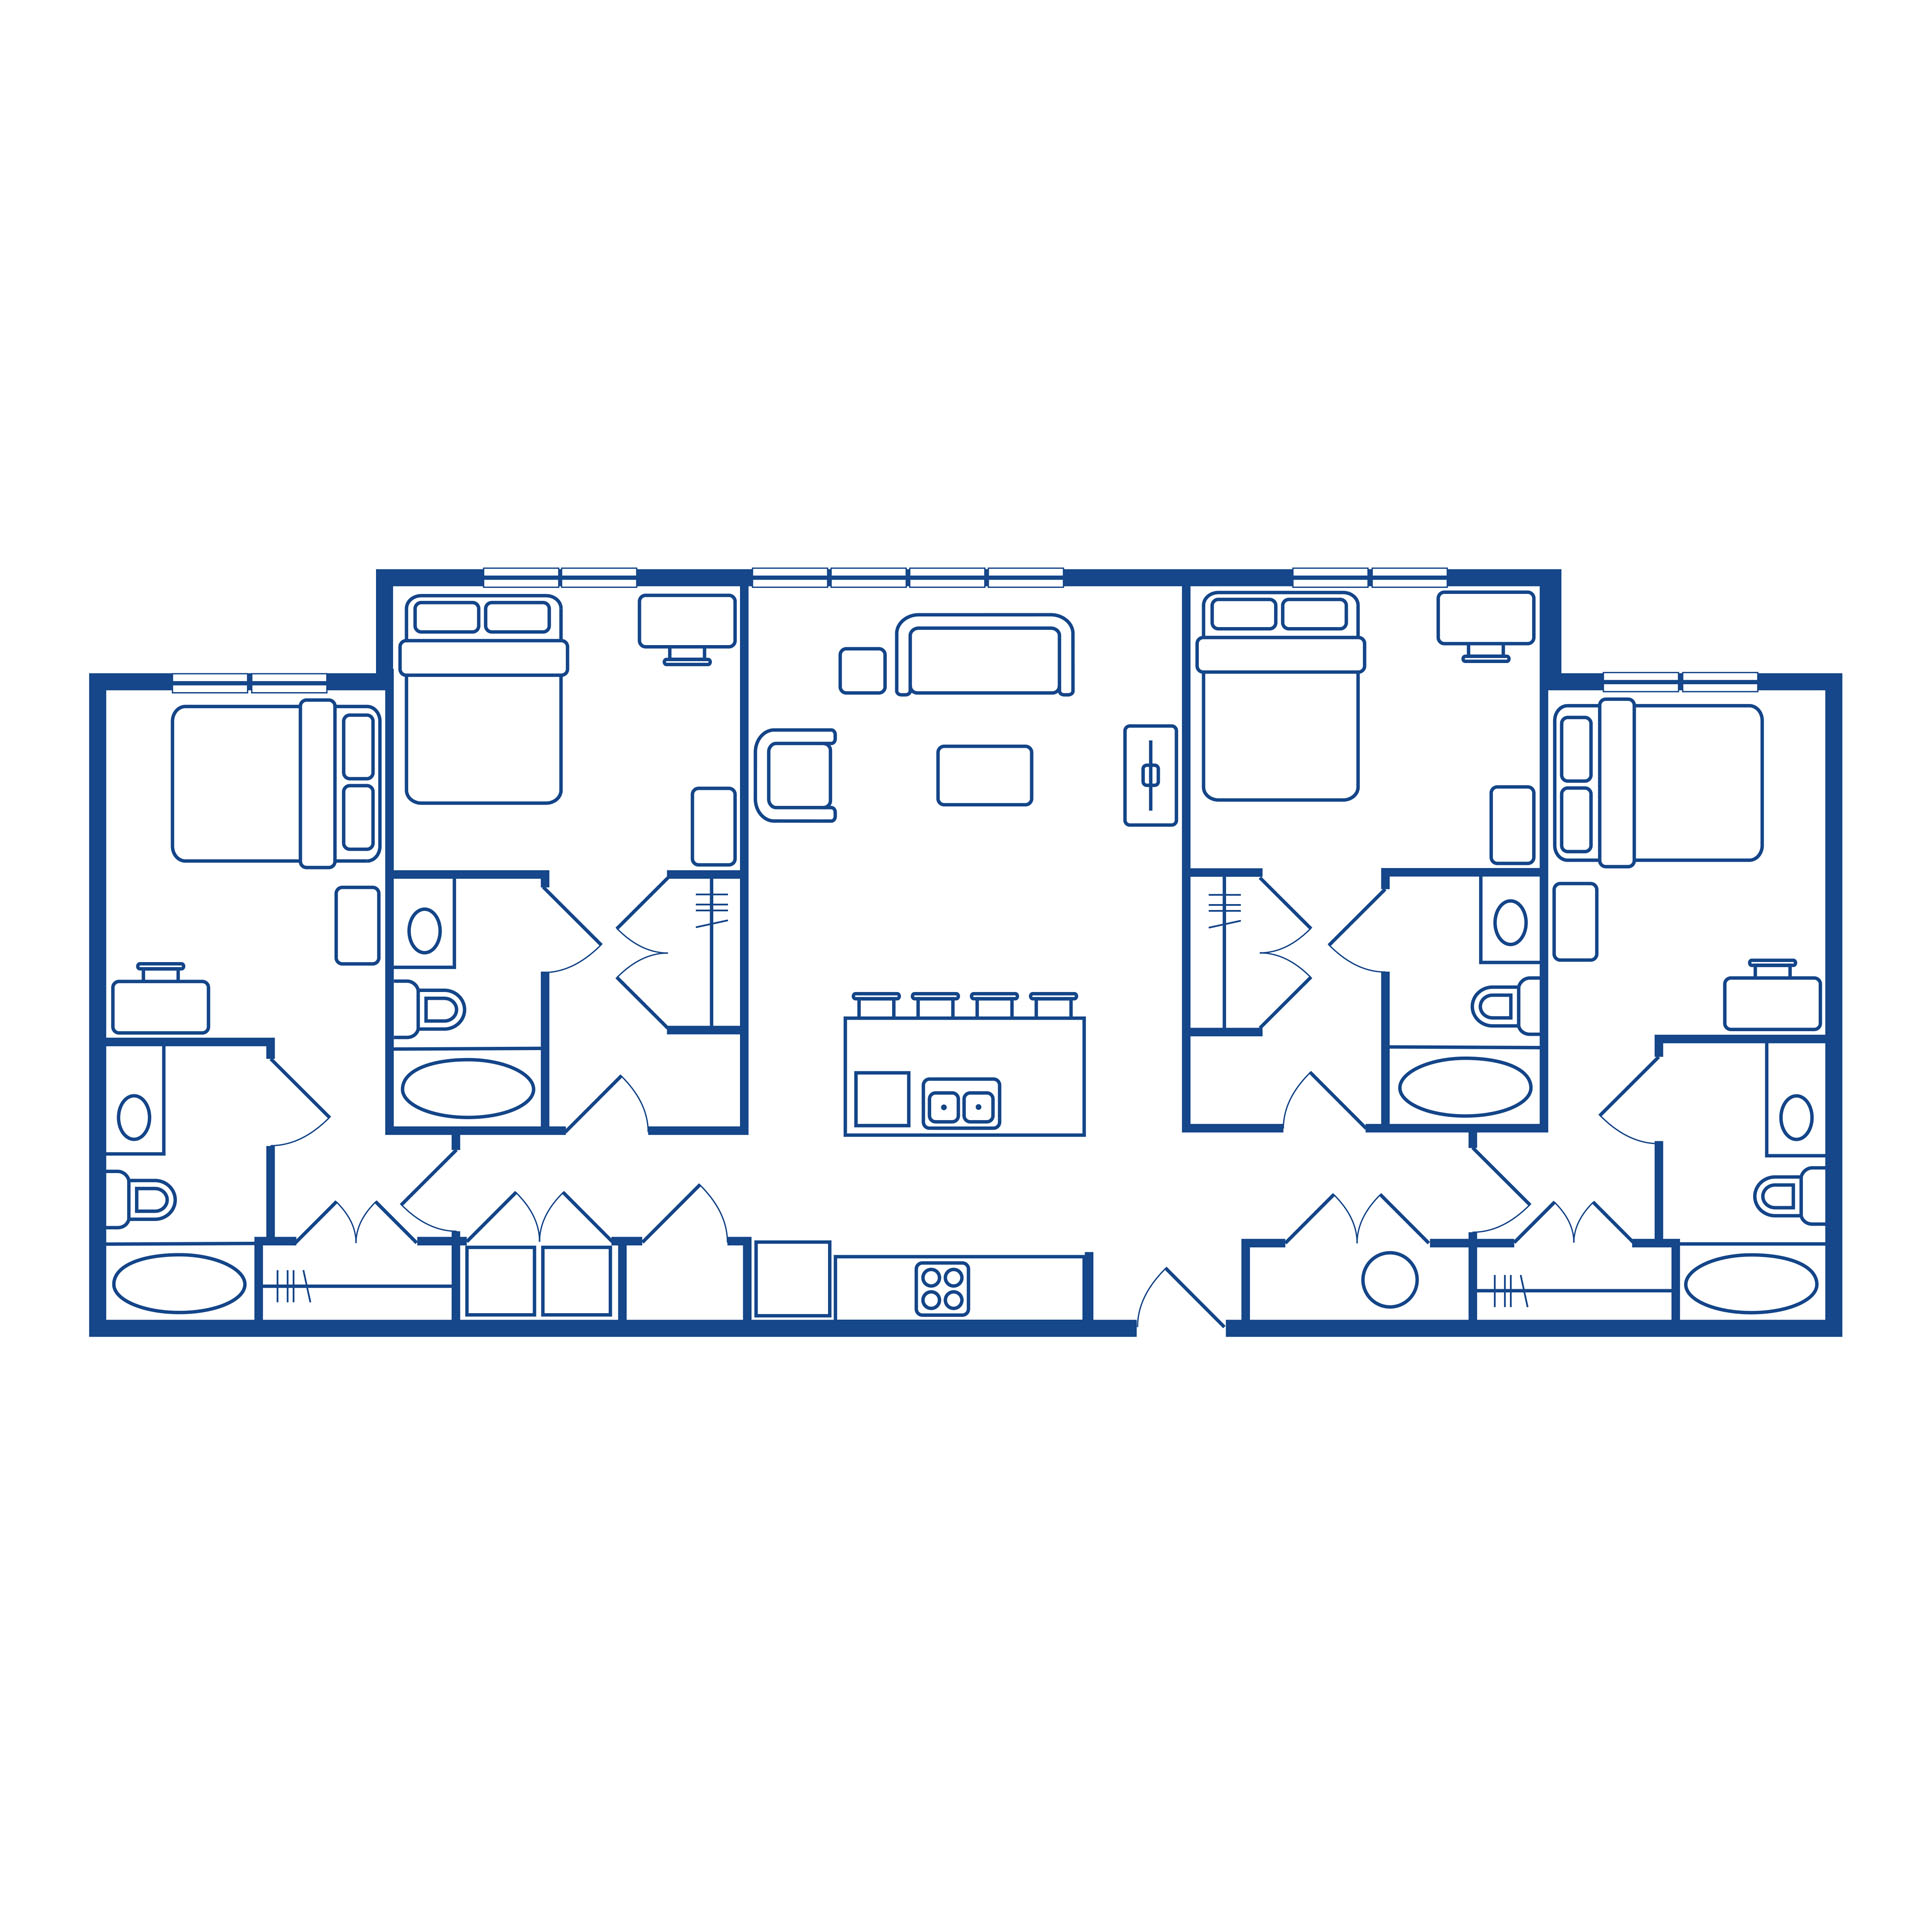 4 bedroom / 4 bath deluxe floor plan